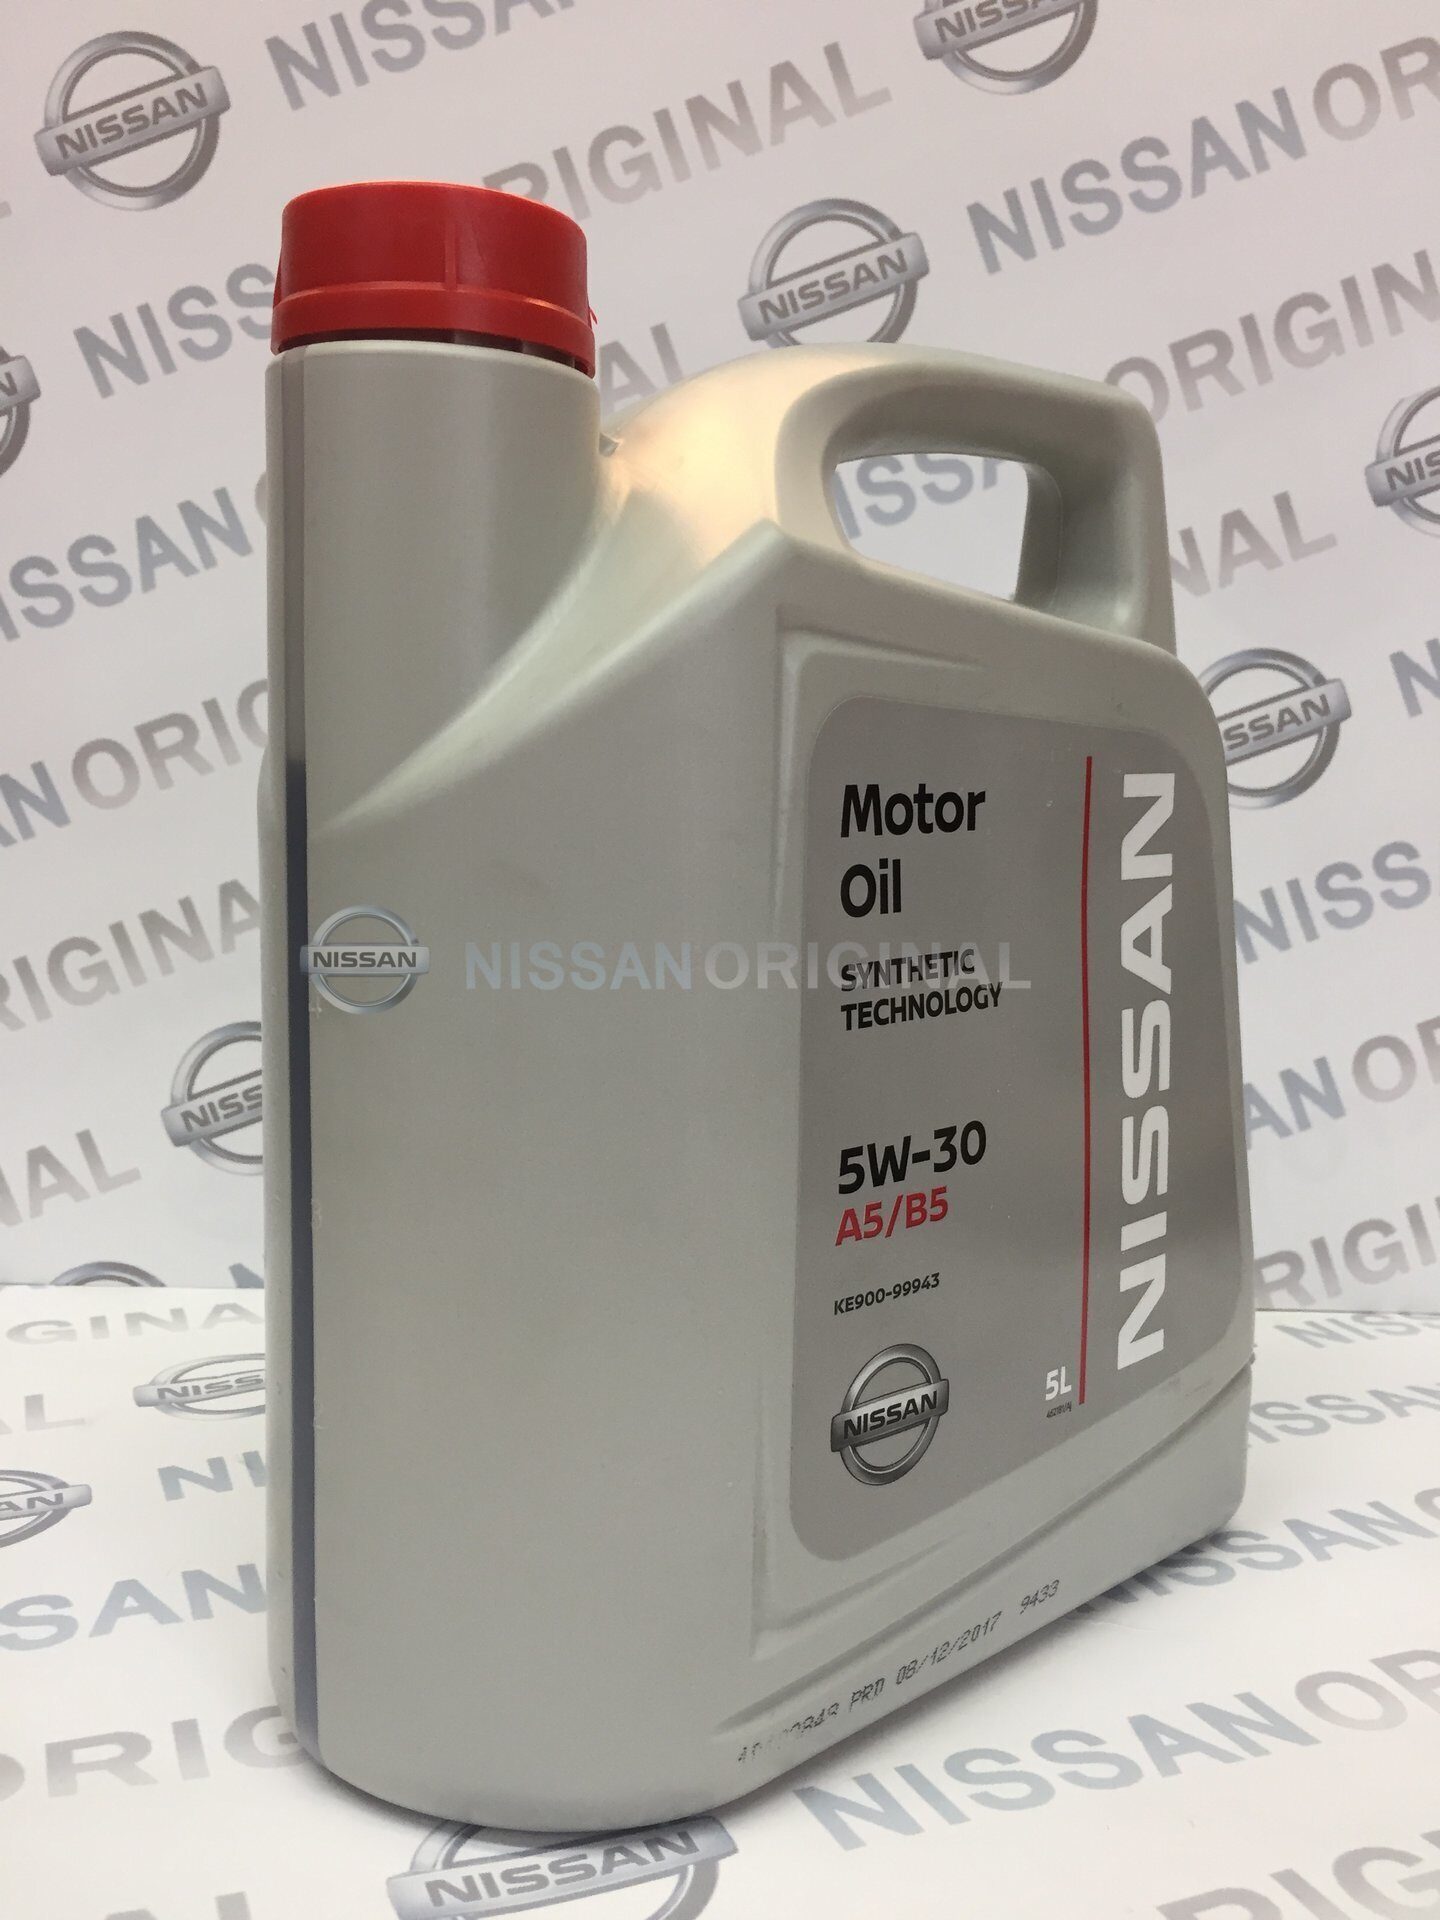 Nissan ke900-99943. Проверочный код масла Ниссан.